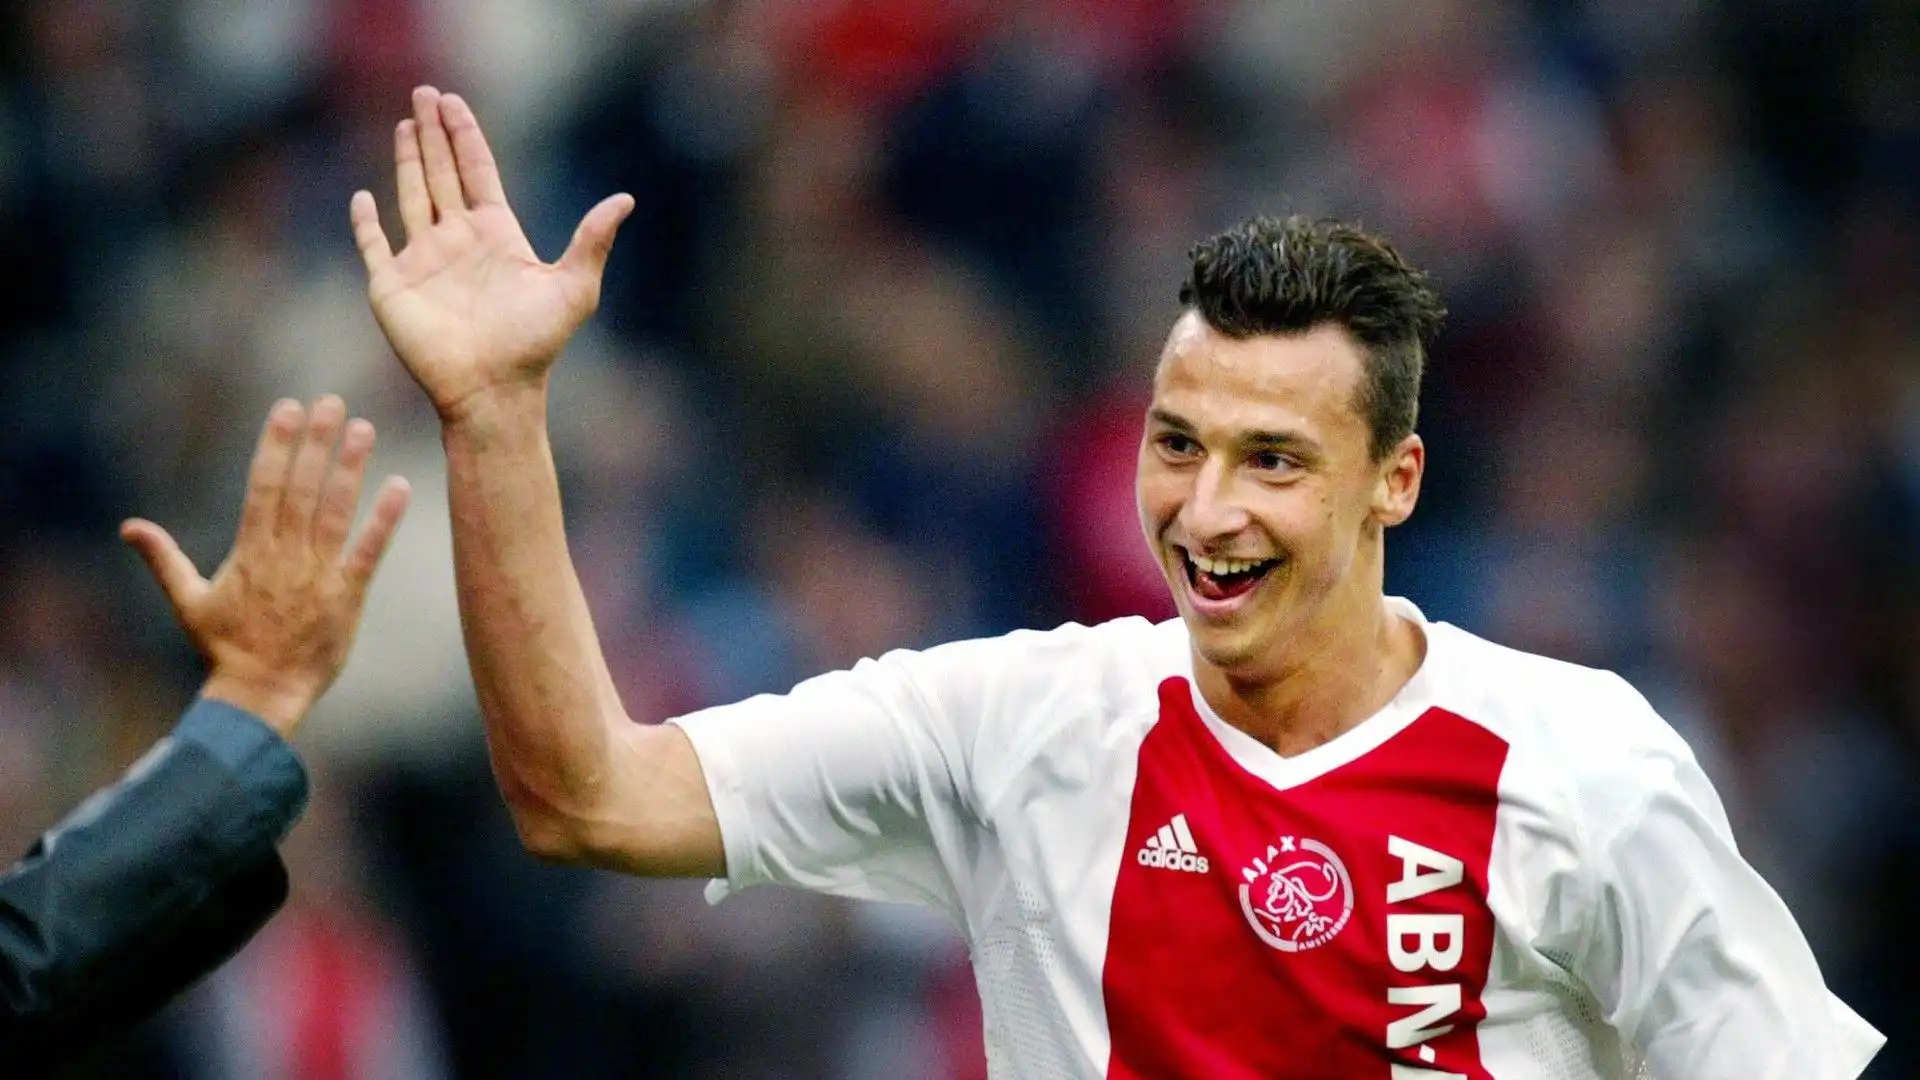 Zlatan Ibrahimovic ha giocato nell'Ajax fino al 2004 vincendo anche 2 campionati olandesi, 1 Coppa dei Paesi bassi e 1 Supercoppa dei Paesi Bassi